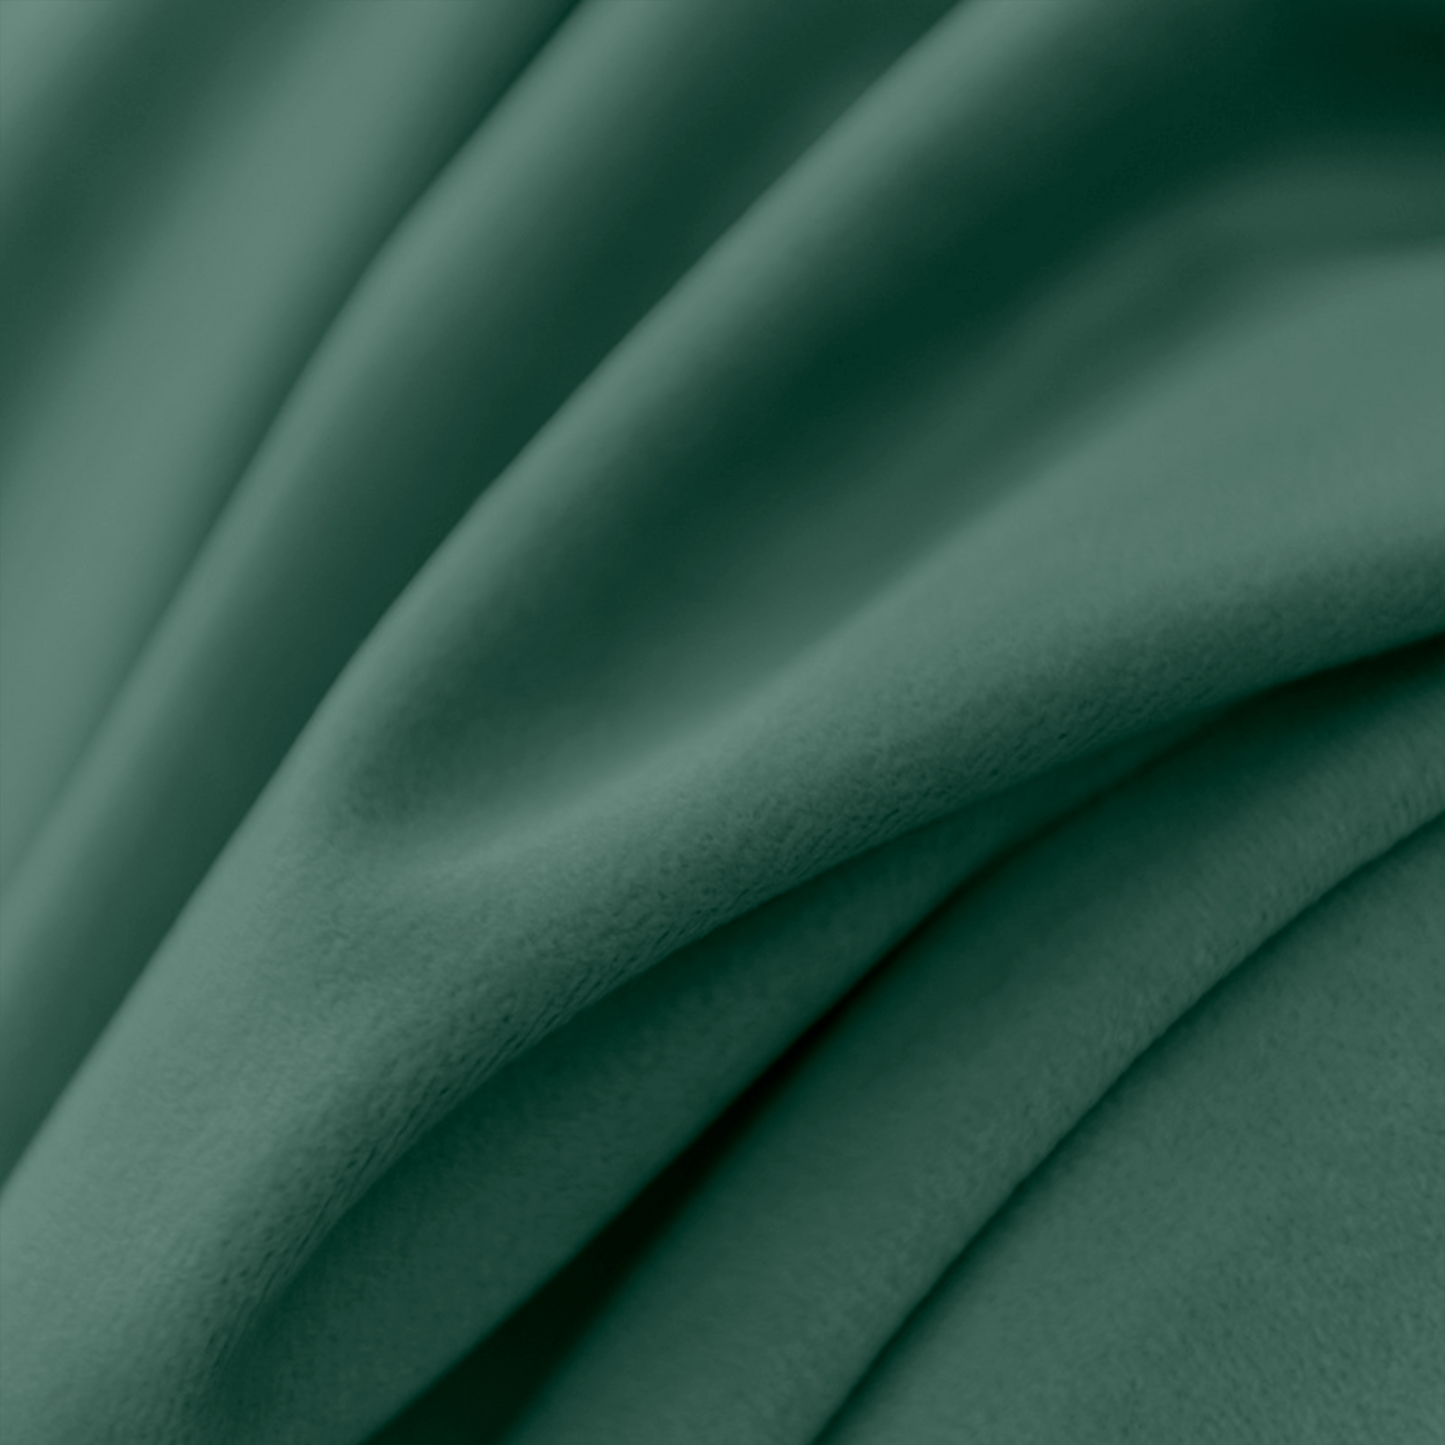 Green Velvet Curtains